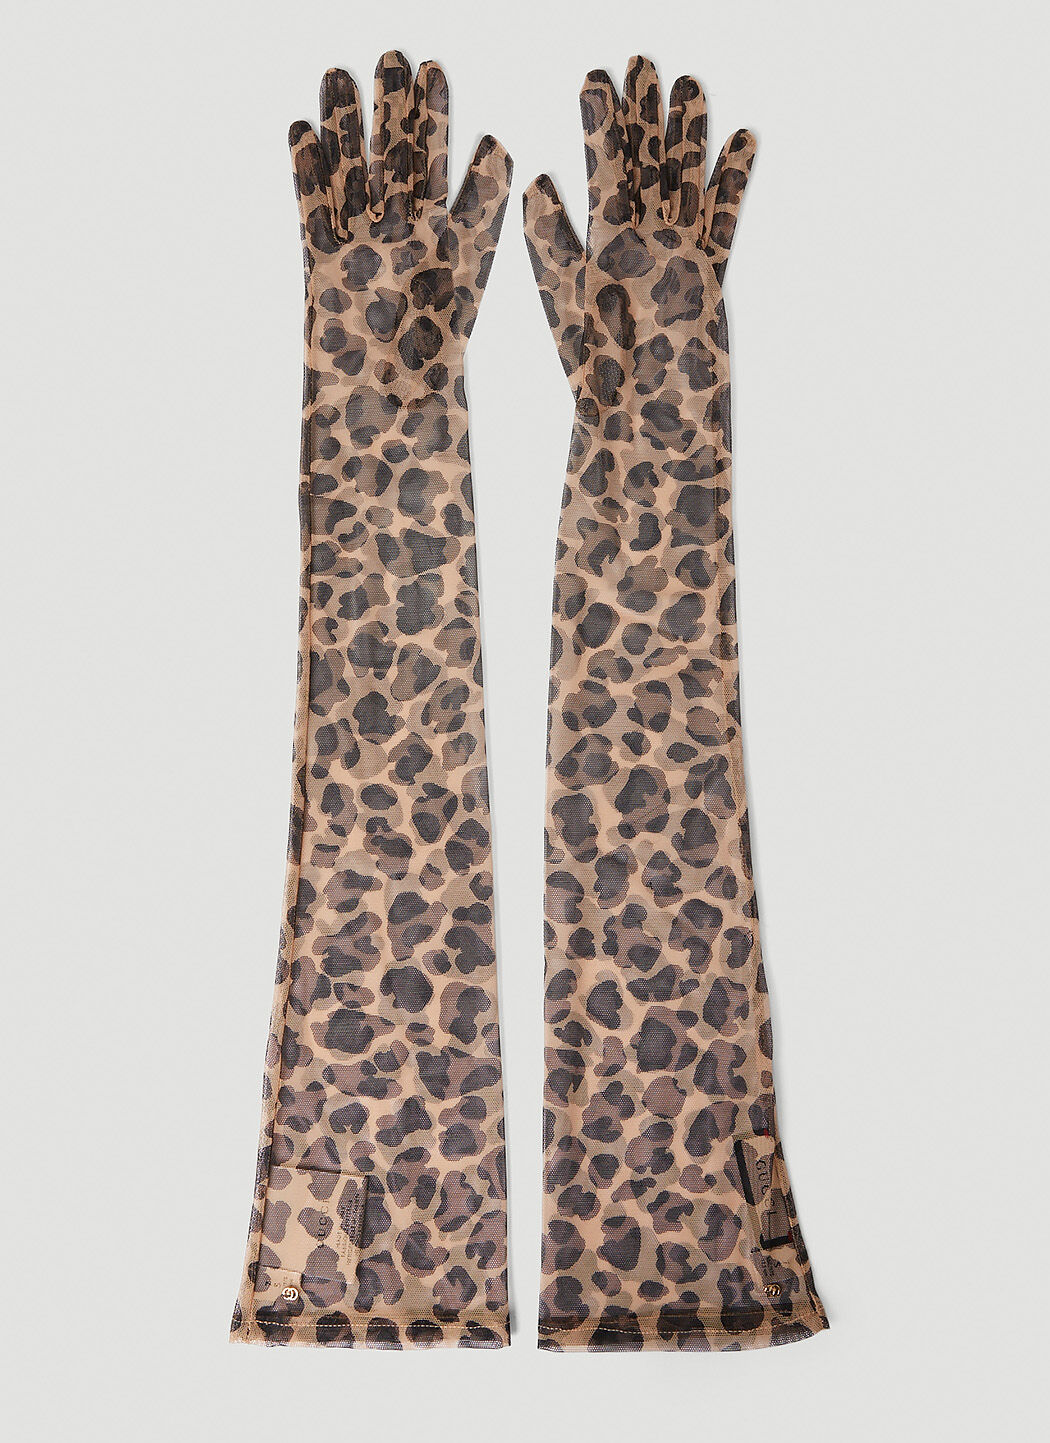 Marni Leopard Print Gloves White mni0255039